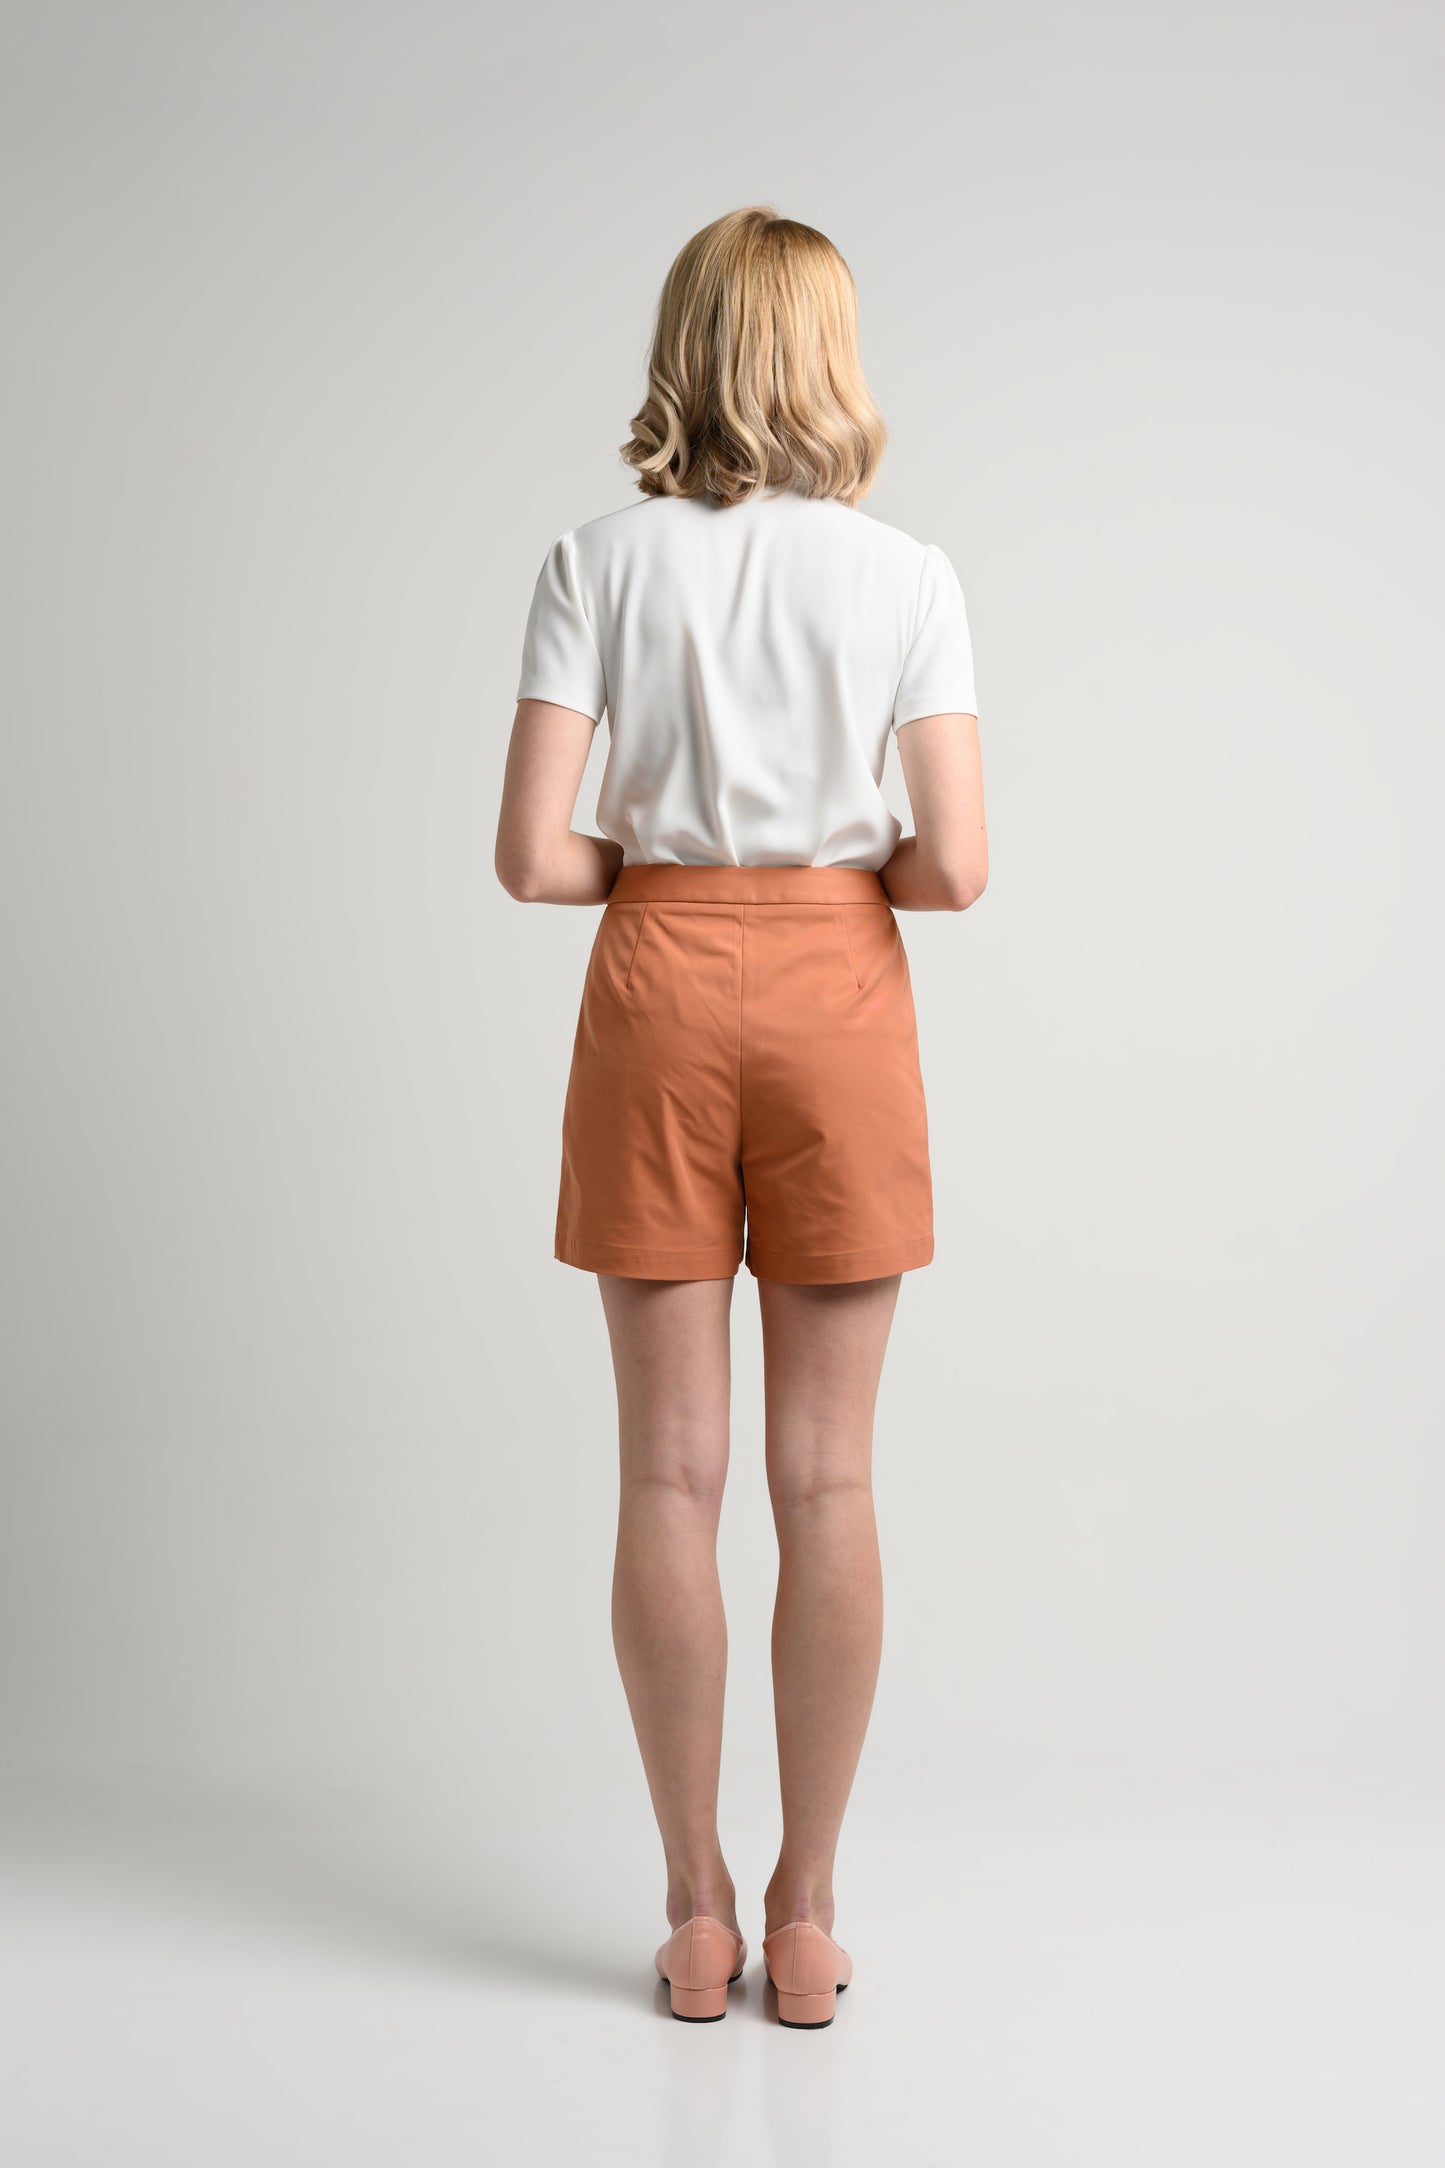 Rosylee Rosylee Slim Fit High Waist Shorts - Marmalade 5